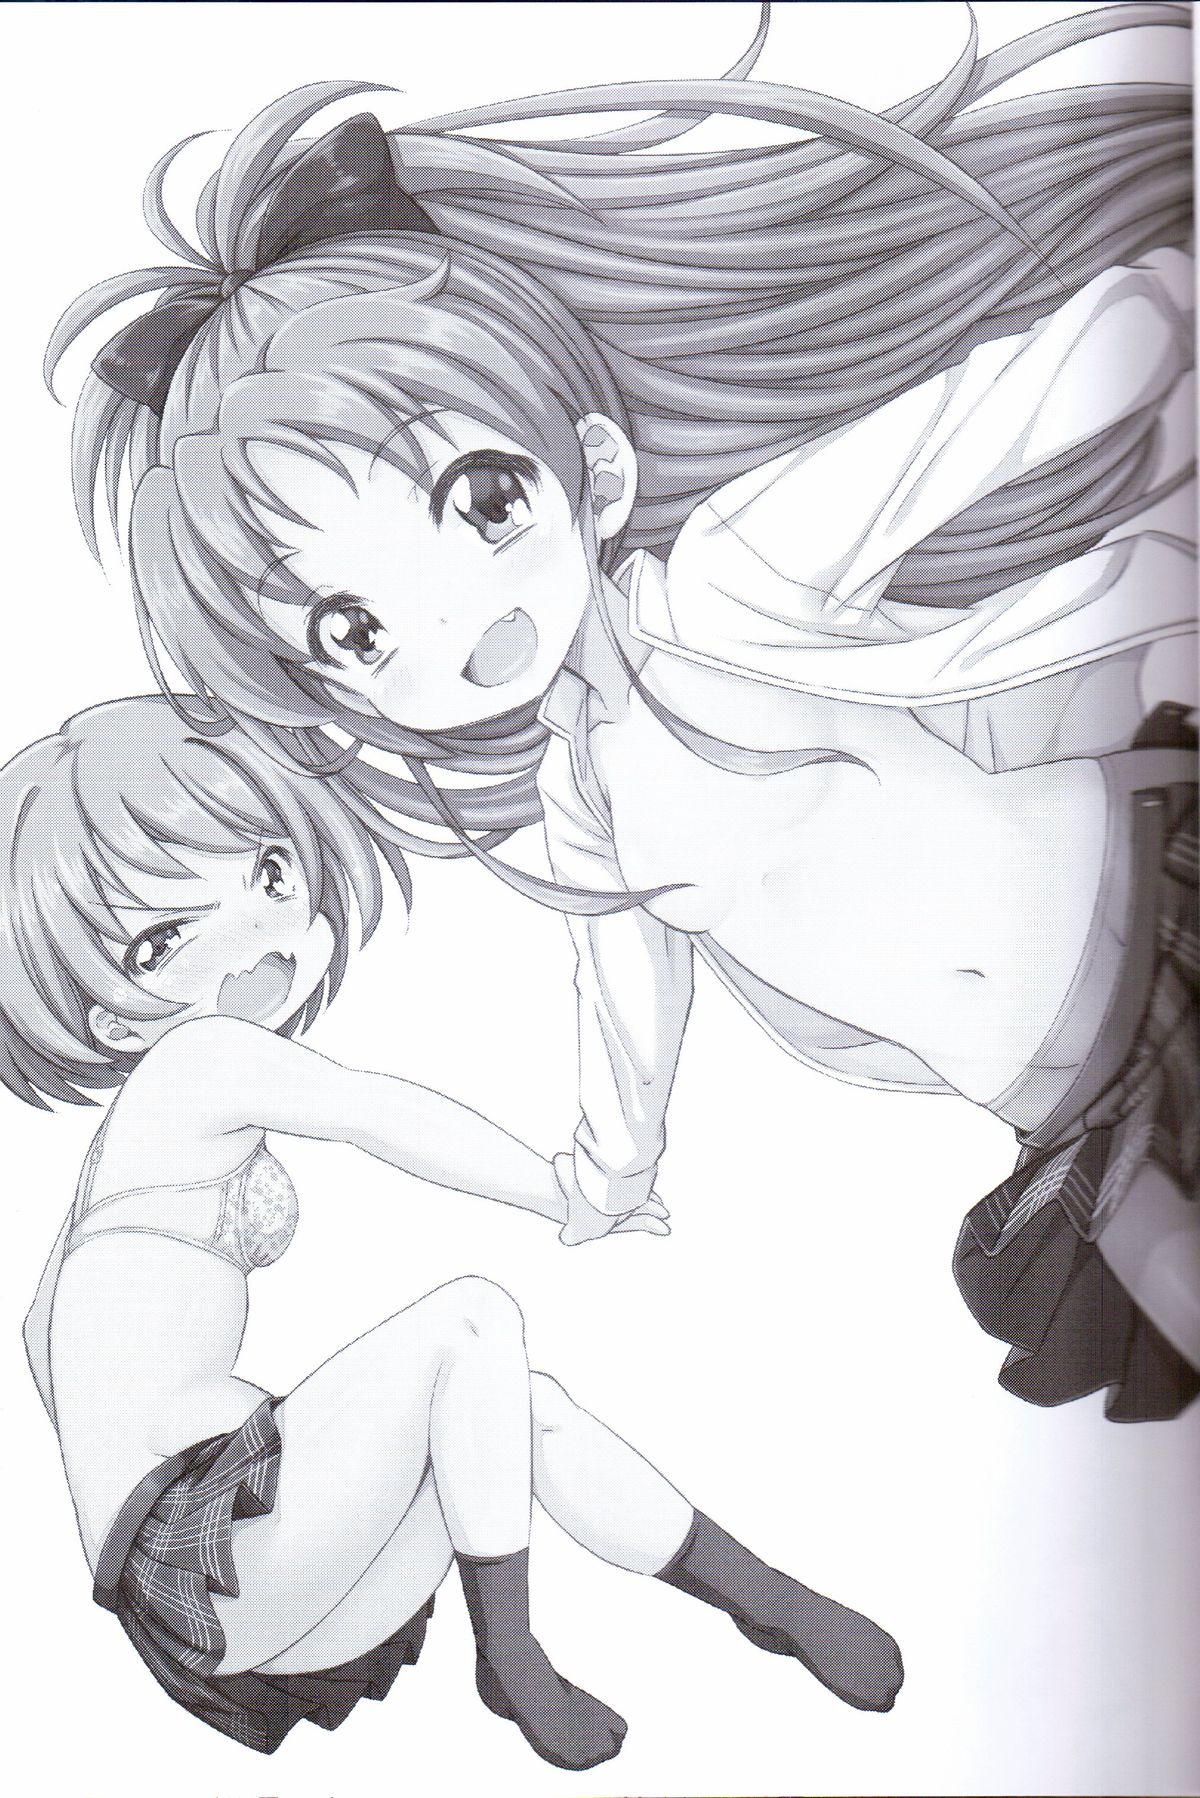 (C83) [深爪貴族 (あまろたまろ)] Lovely Girls' Lily vol.5 (魔法少女まどか☆マギカ)